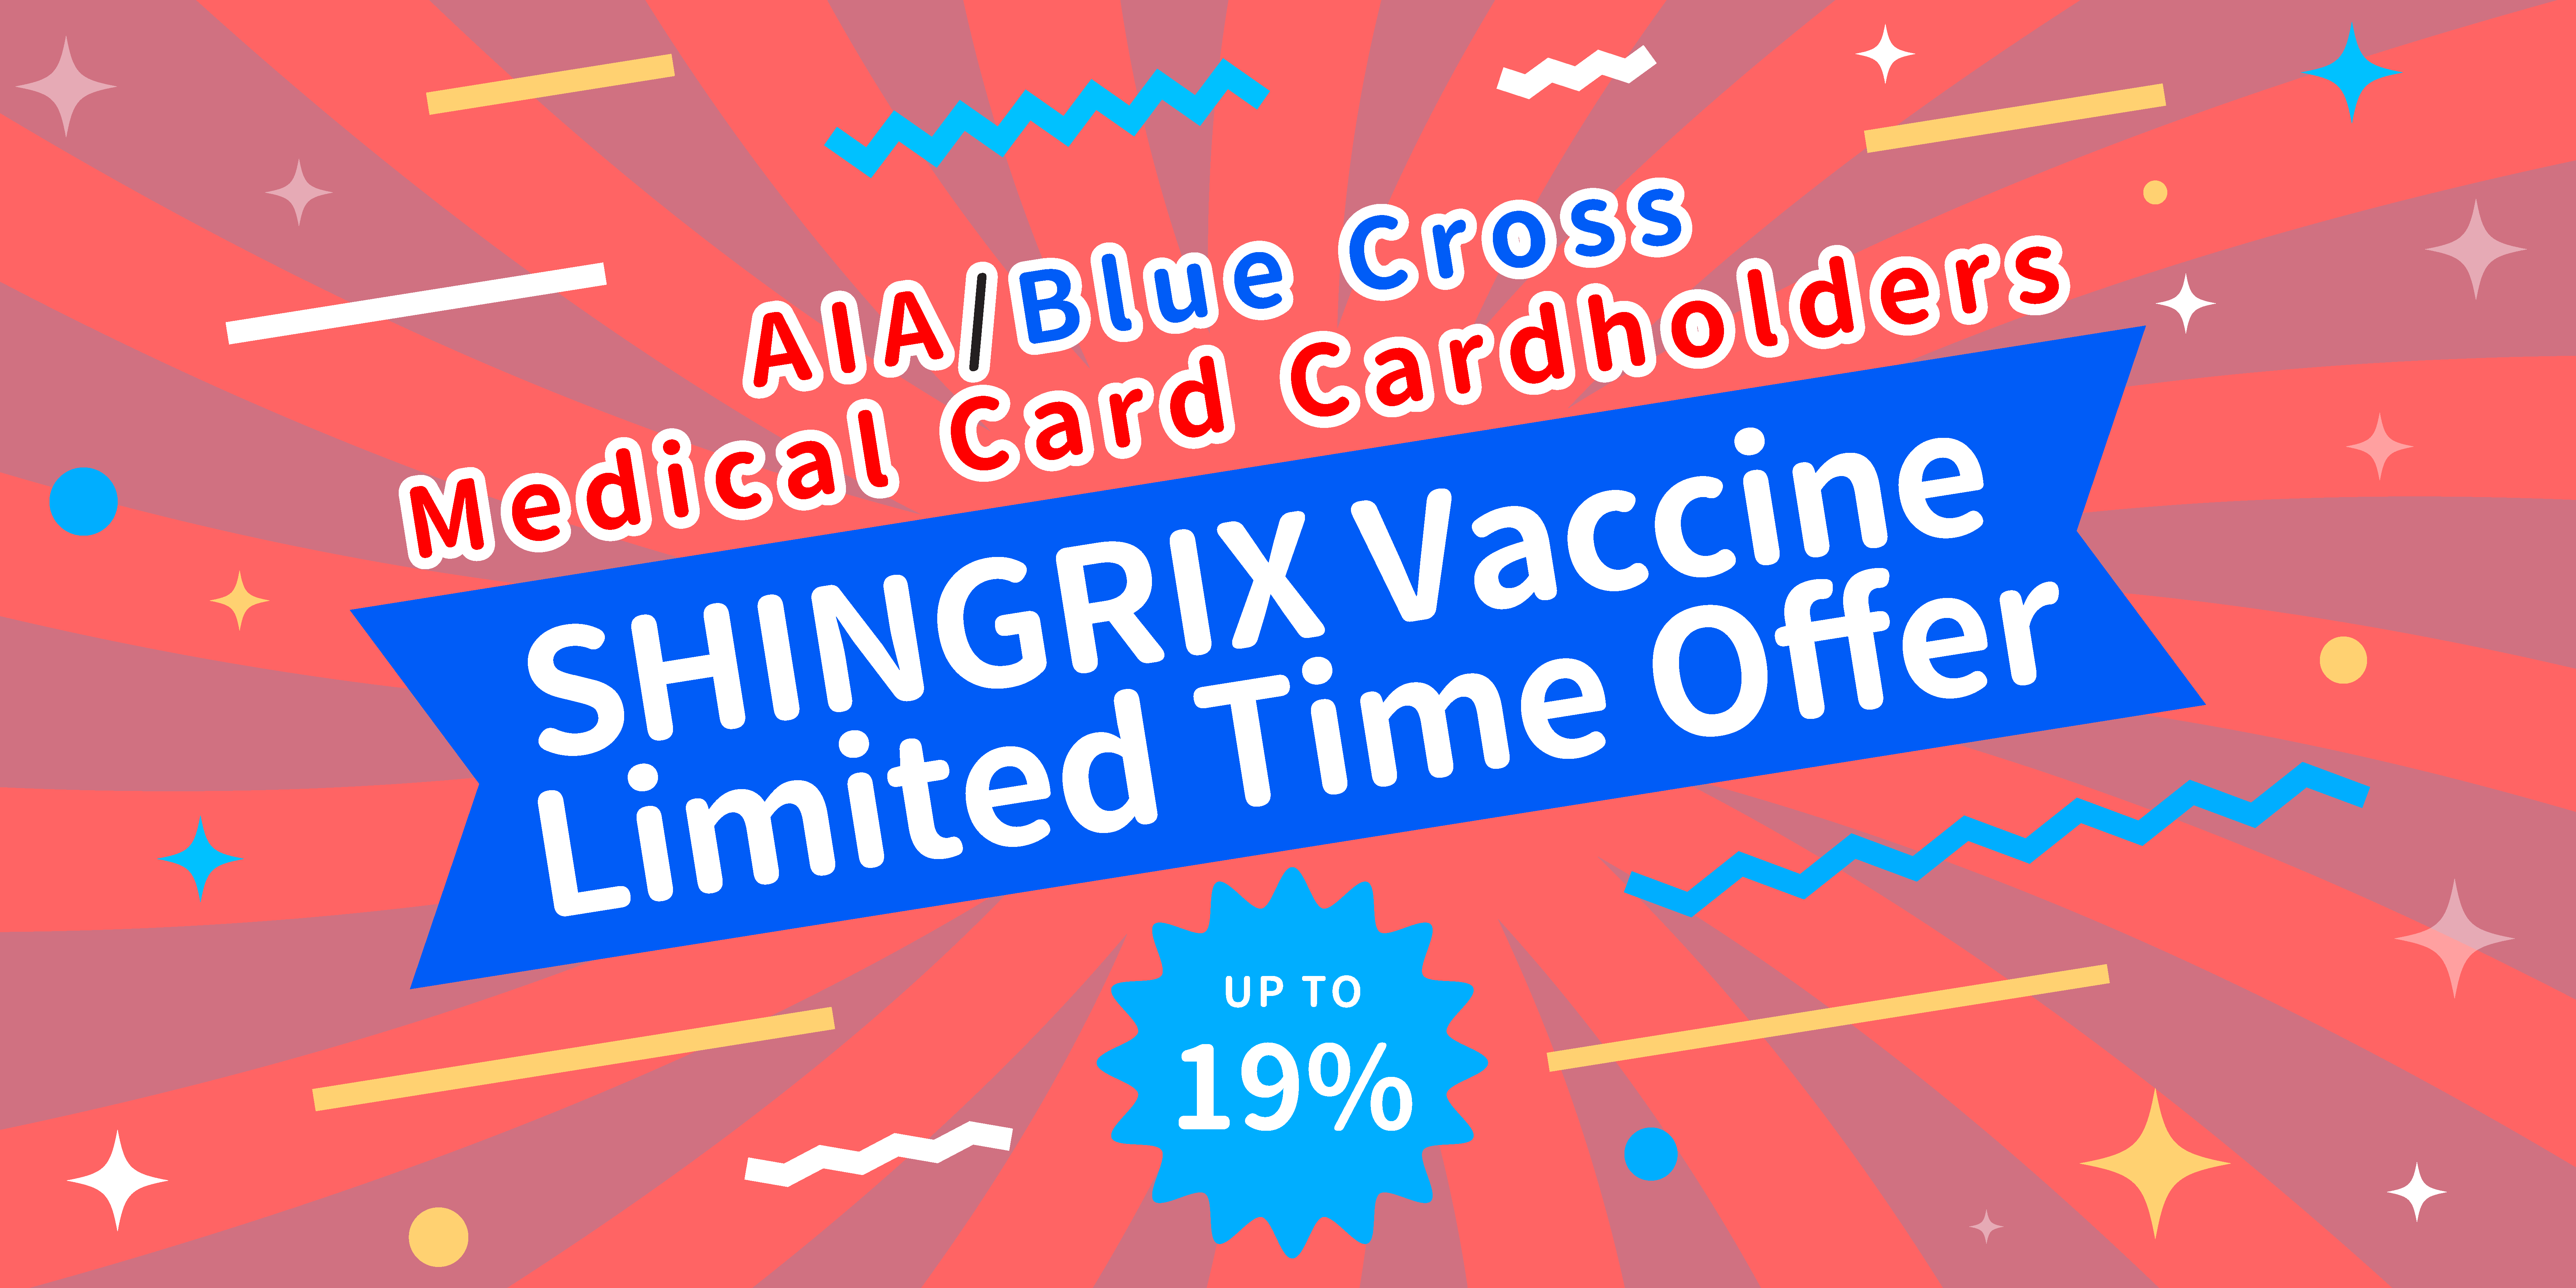 SHINGRIX offer for medical card